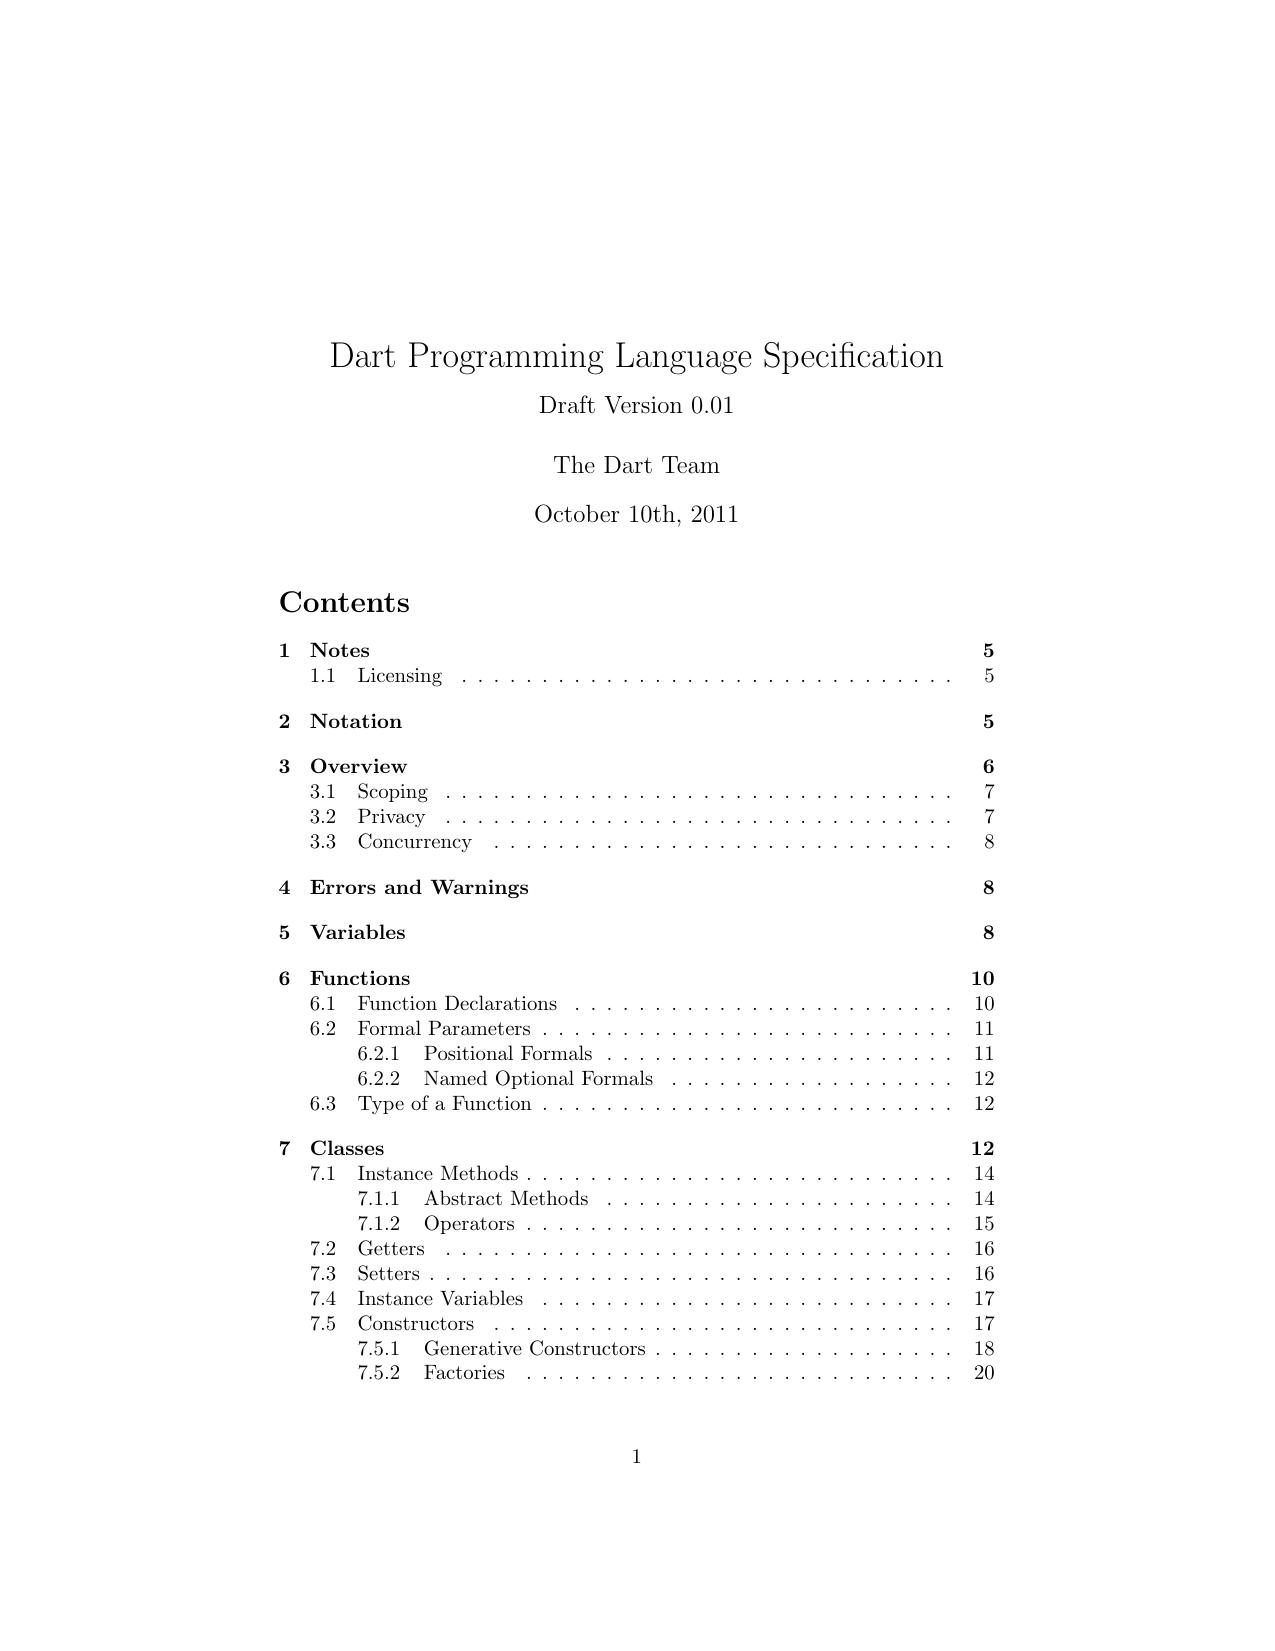 Dart Programming Language Specification - Draft Version v0.01